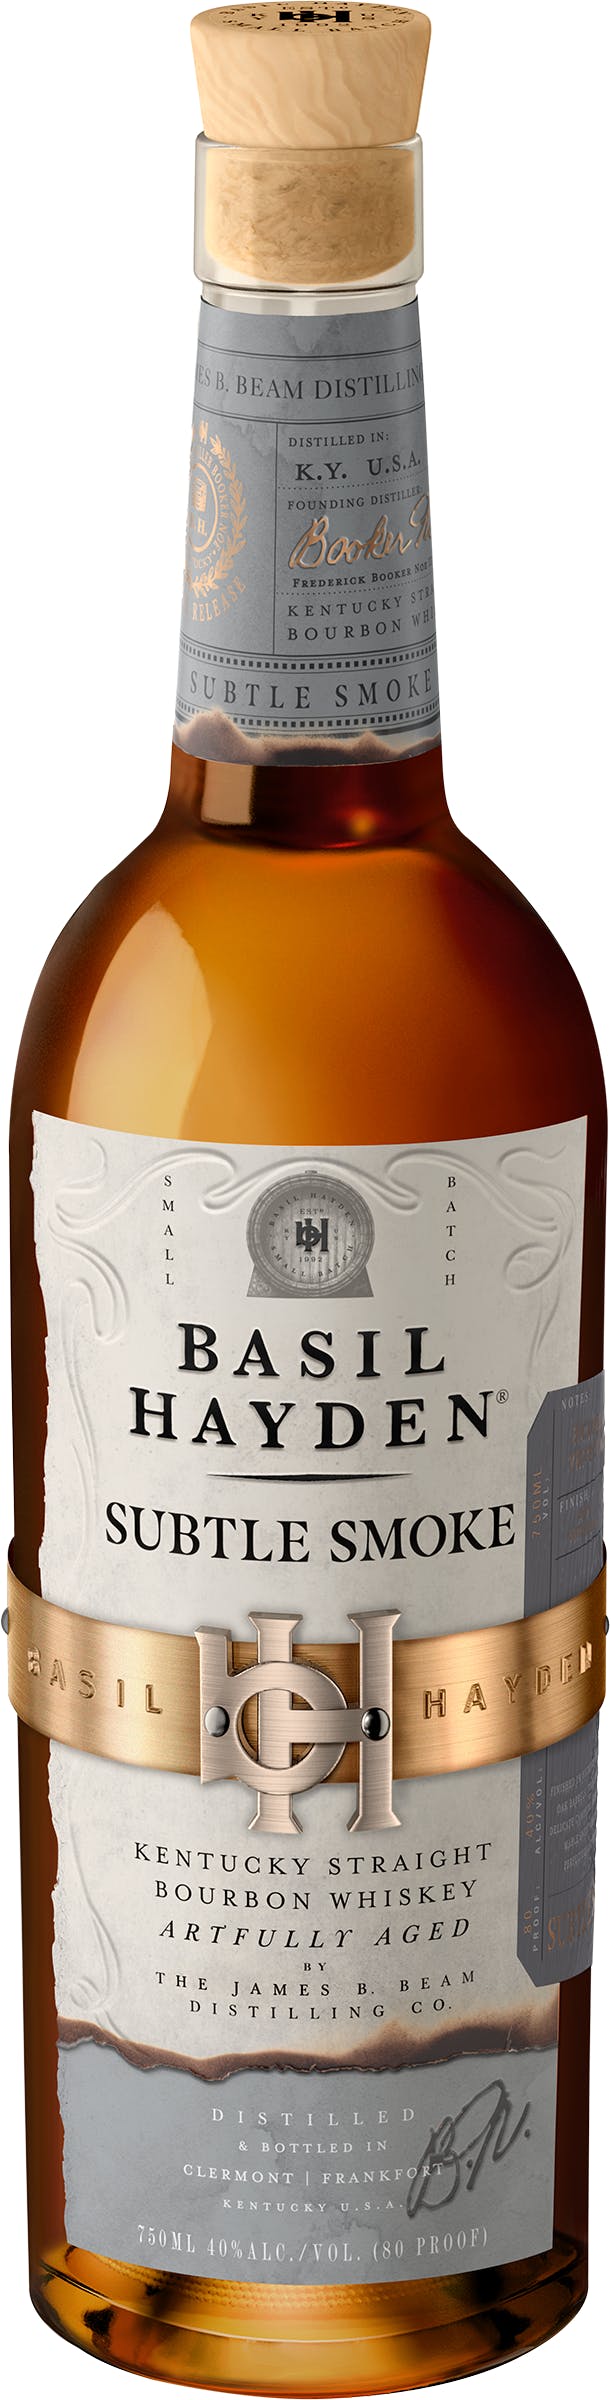 Basil Hayden Subtle Smoke